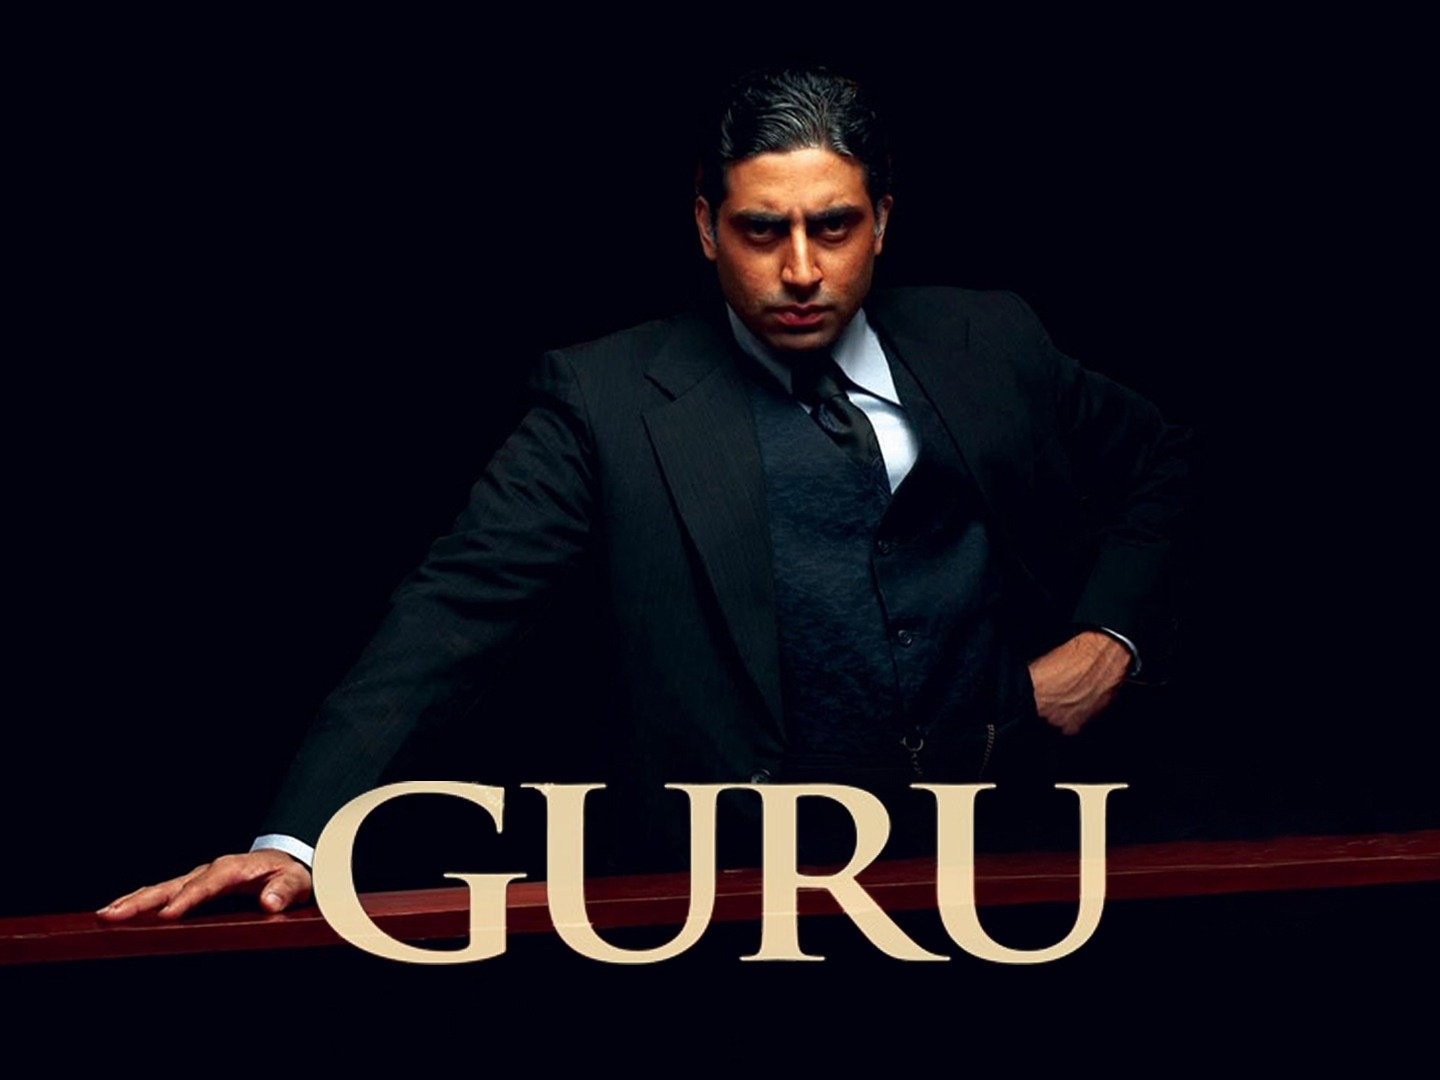 Guru (1989 film) - Wikipedia